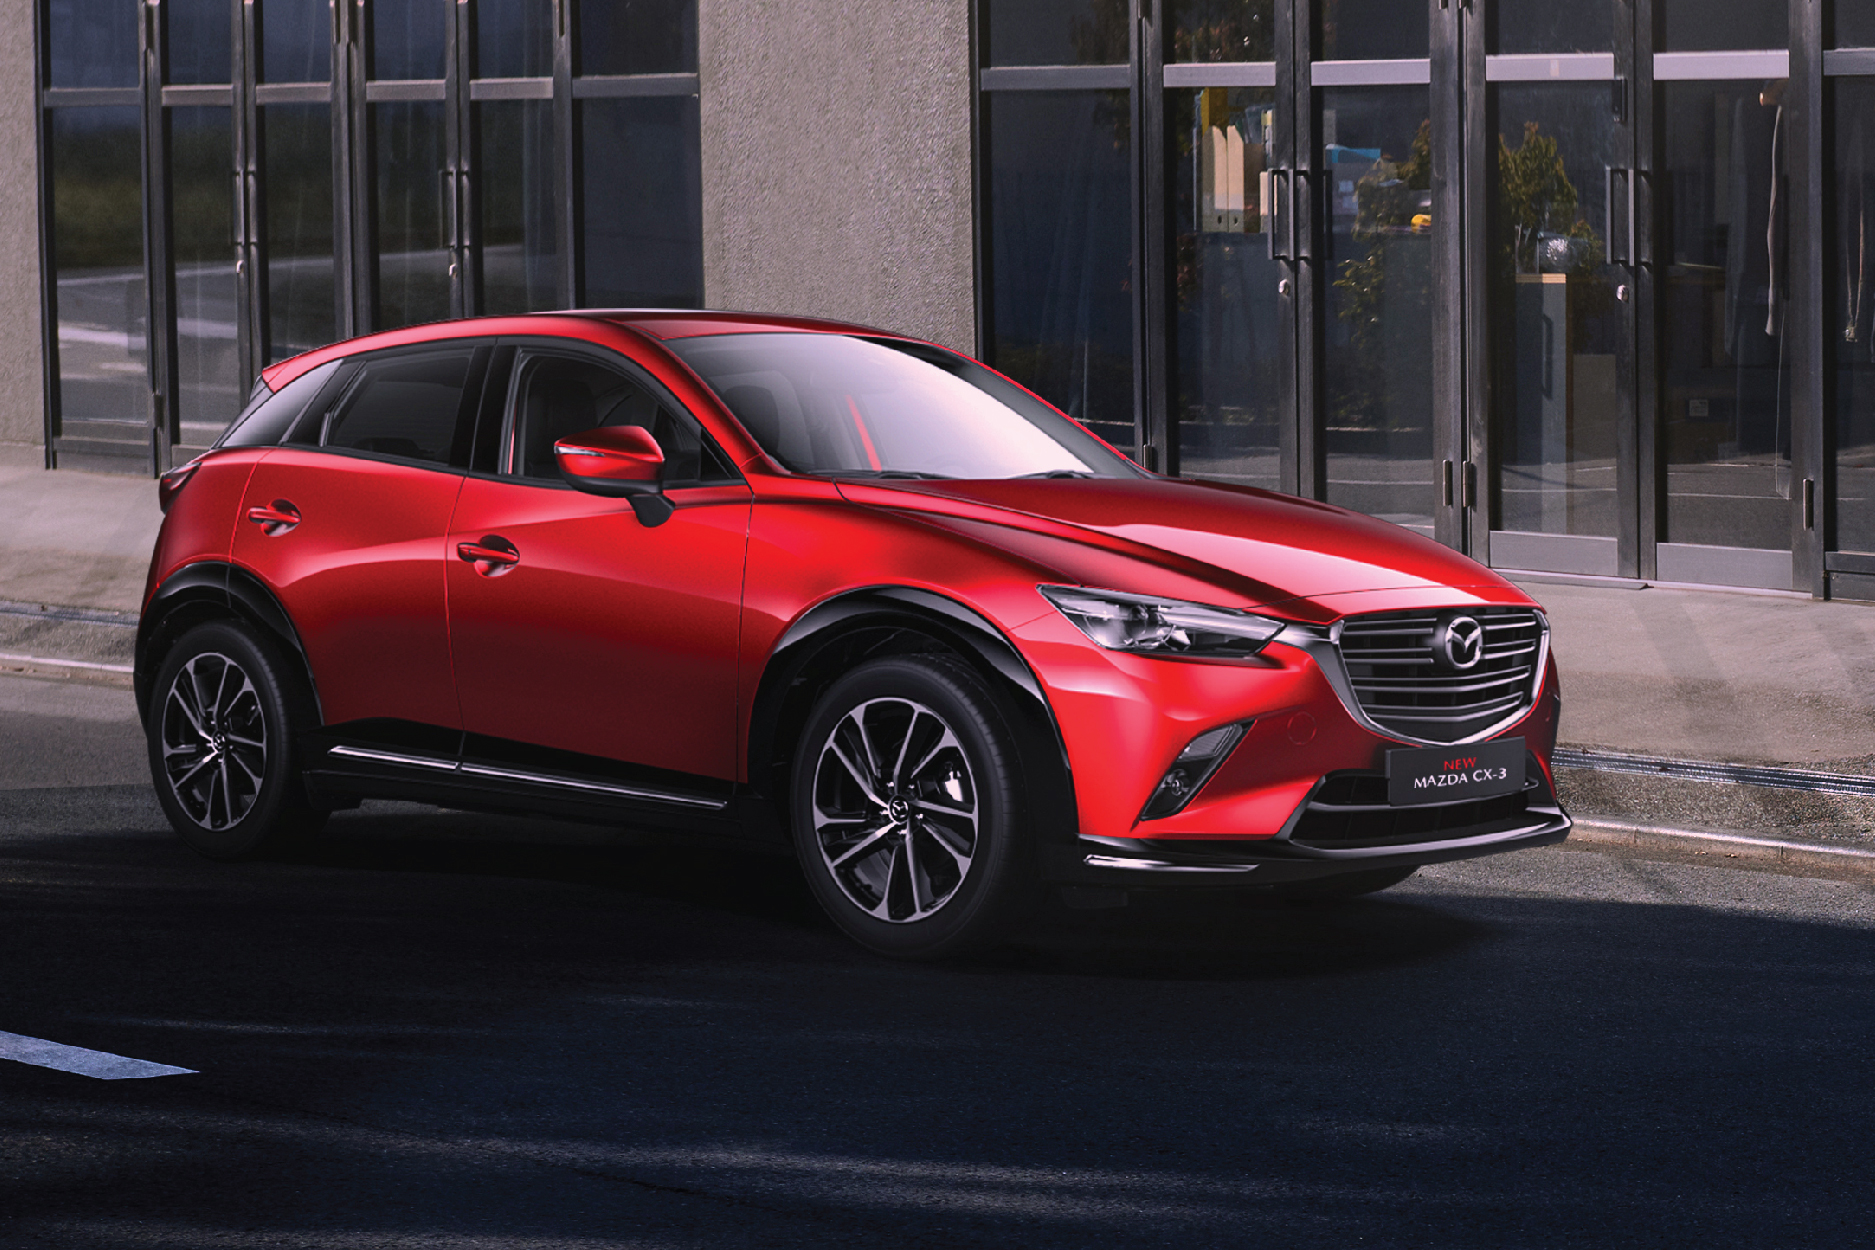 THACO AUTO giới thiệu New Mazda CX-3 – Mẫu XE khẳng định đẳng cấp thương hiệu Mazda trong phân khúc B-SUV